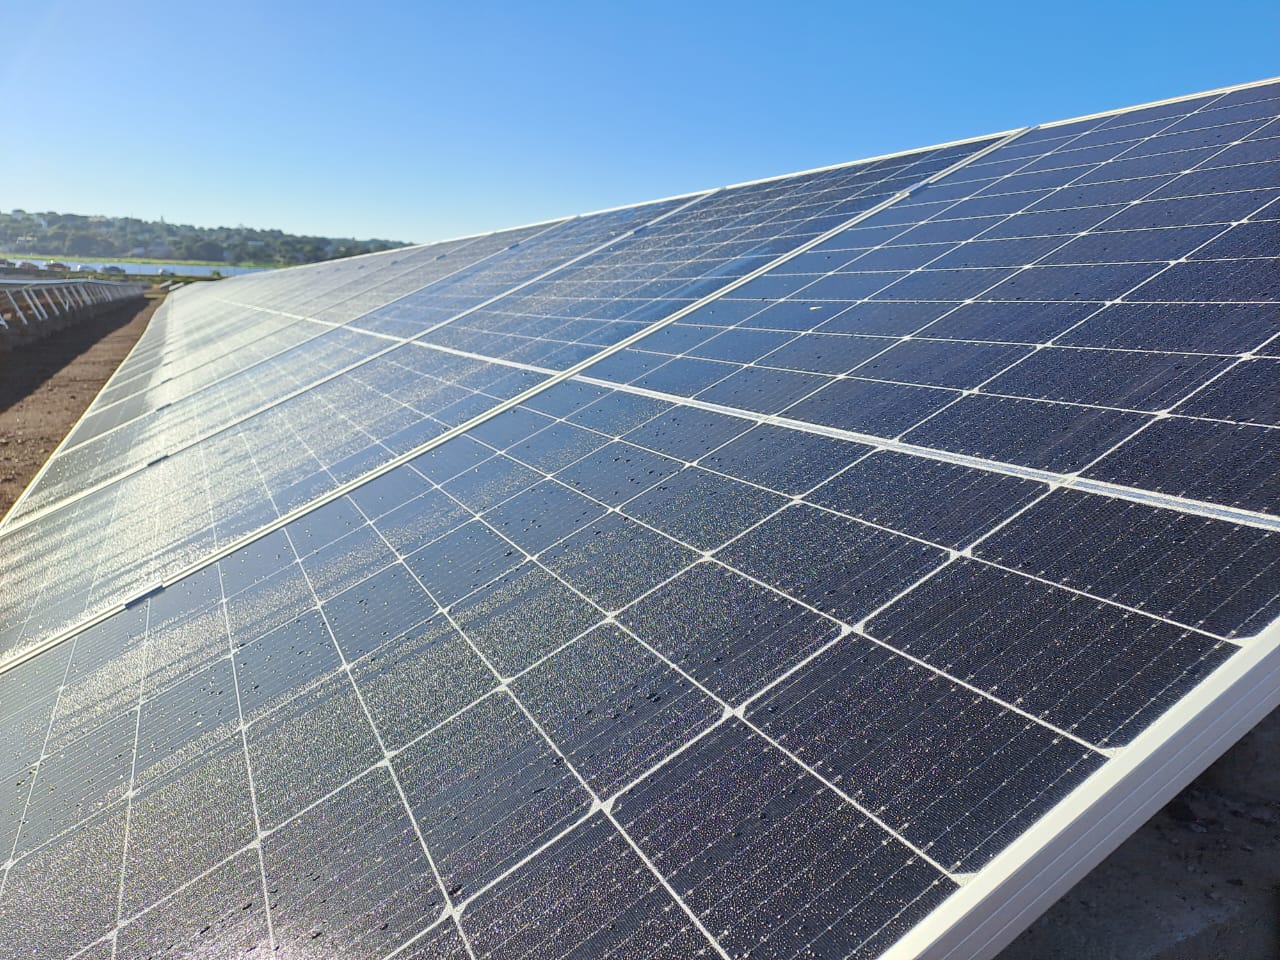 Ponen en marcha el Parque Solar Fotovoltaico "Silicon Misiones", de 5 megas, capaz de abastecer de energía a unas 2 mil familias de Posadas imagen-10